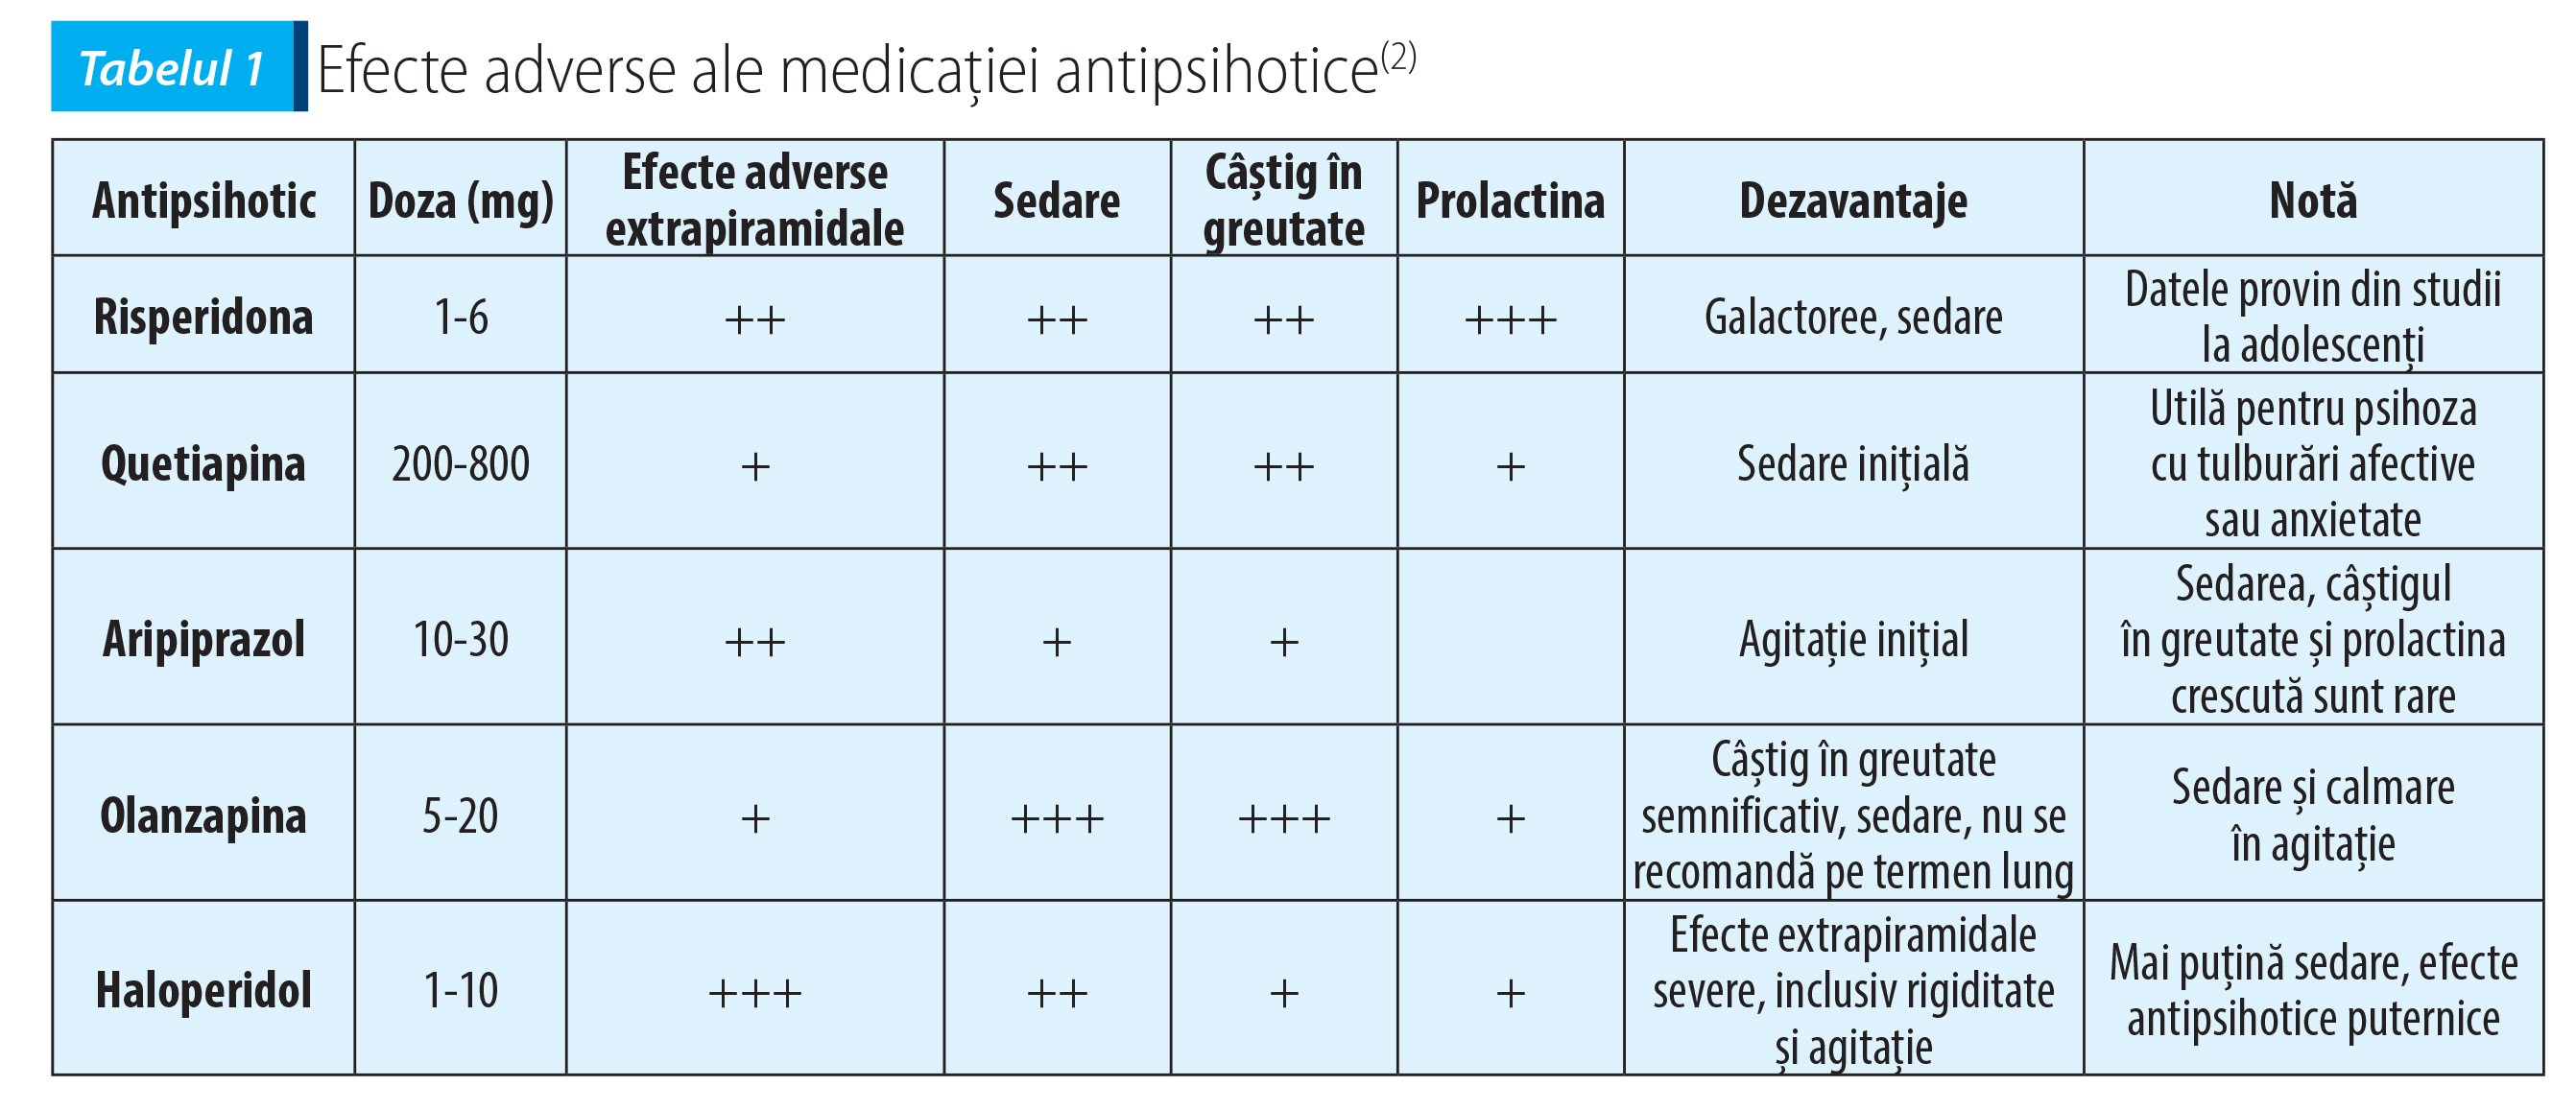 Tabelul 1 Efecte adverse ale medicației antipsihotice(2)